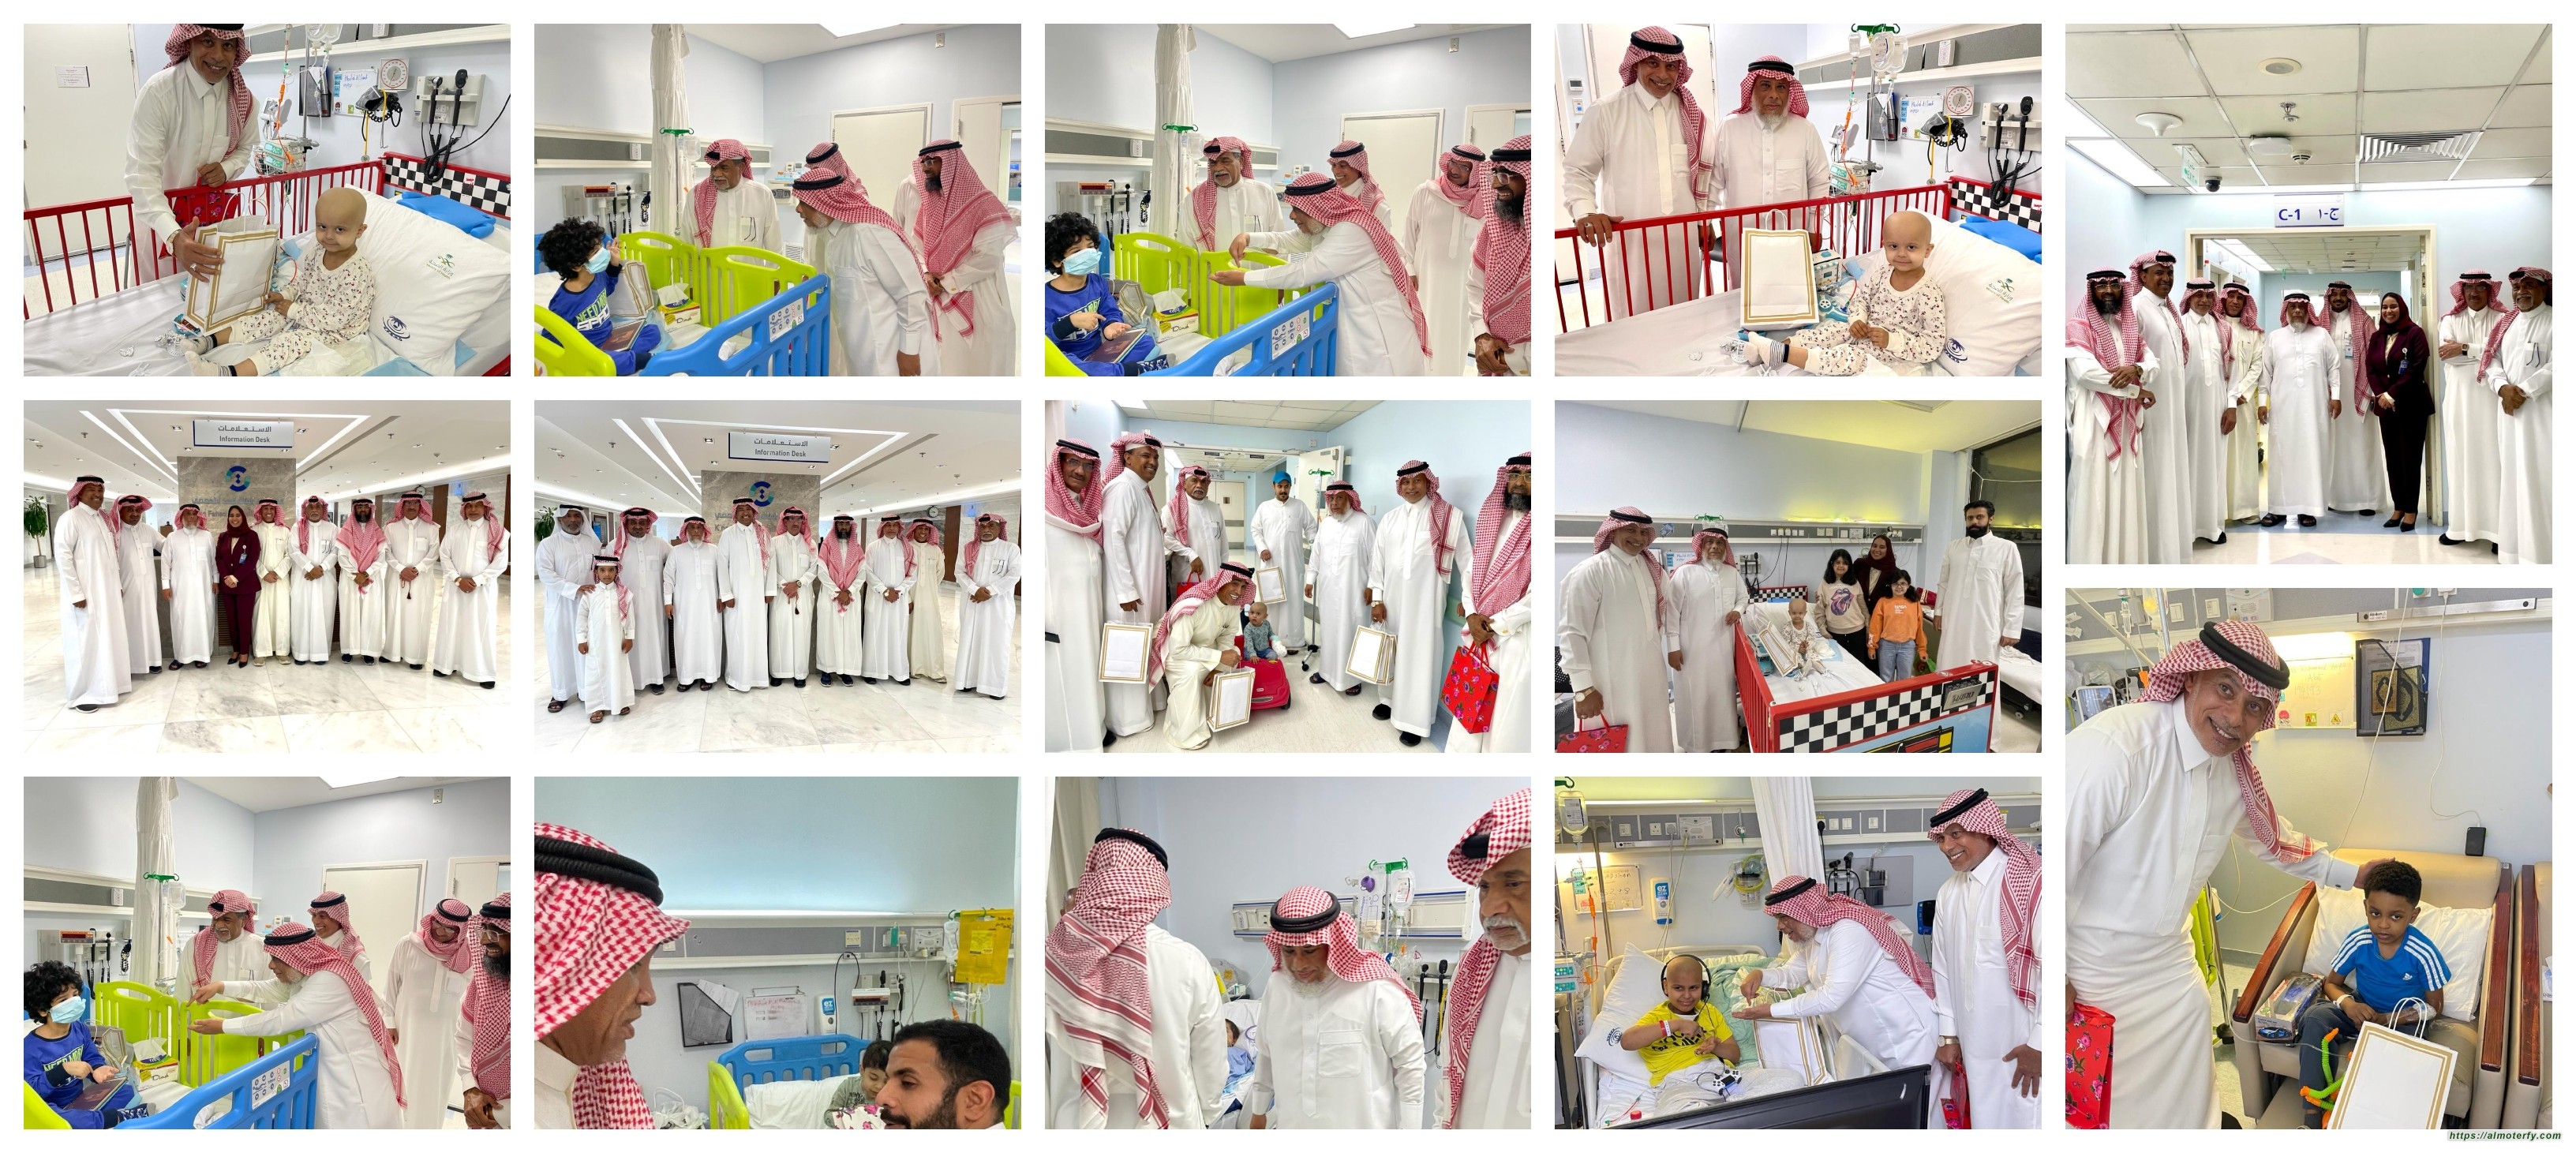 أعضاء مجموعة زمن الطيبين يقومون بزيارة الأطفال المرضى في مستشفى الملك فهد التخصصي بالدمام